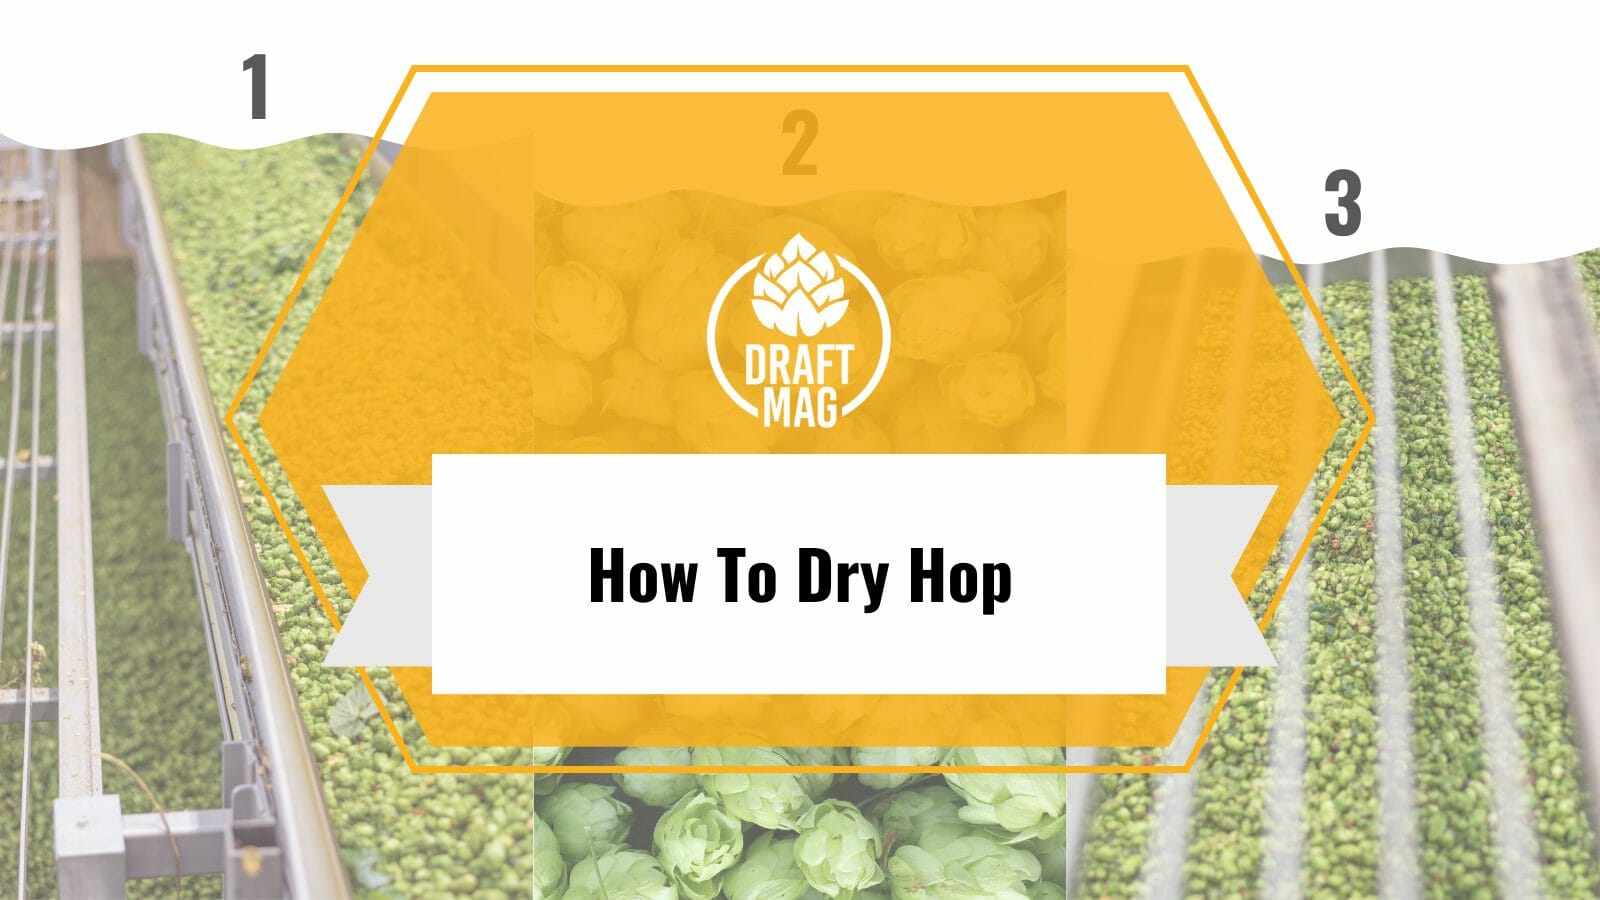 Dry hops